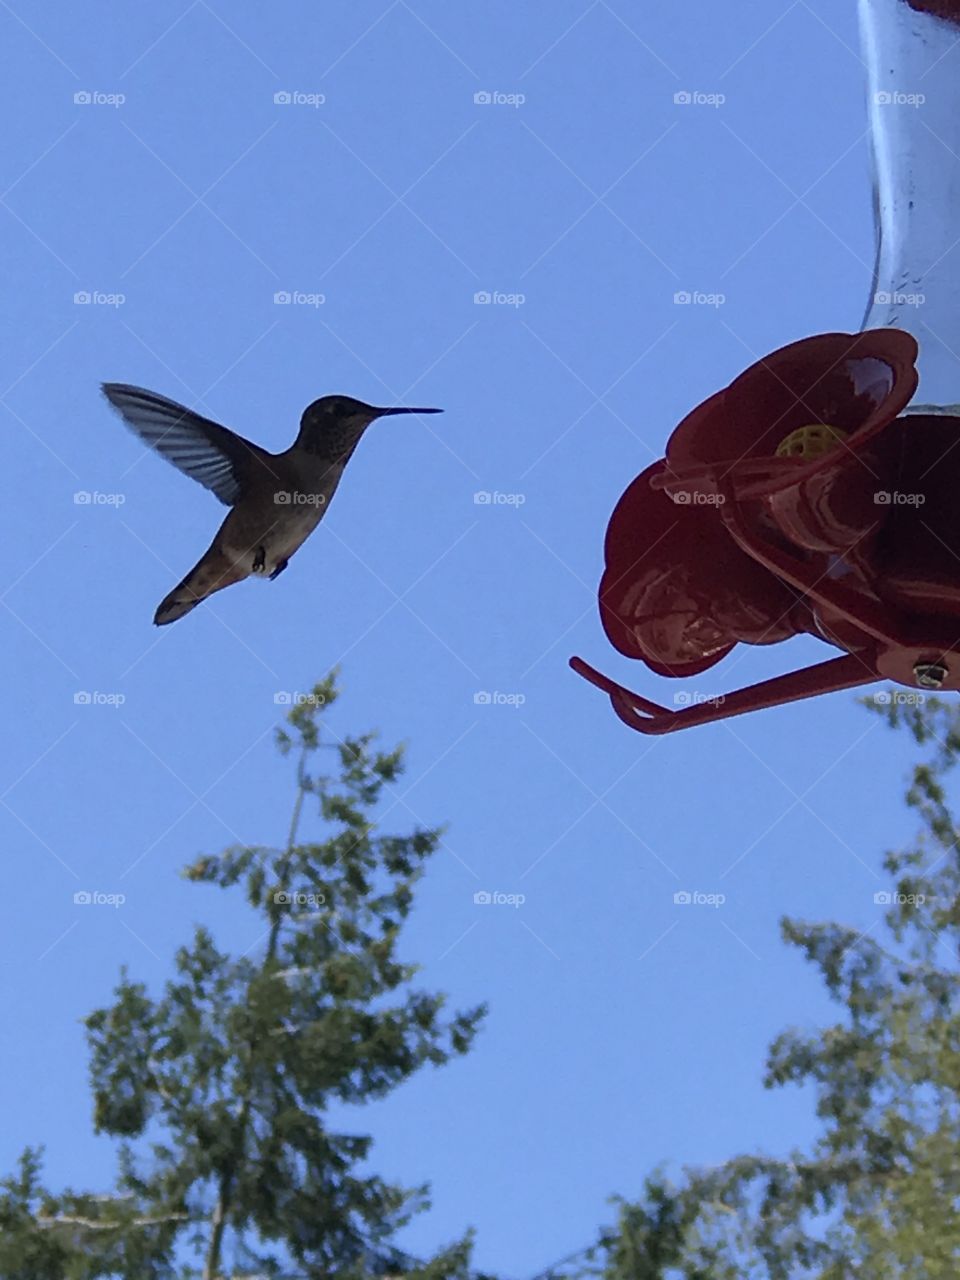 A hummingbird approaching a bird feeder 